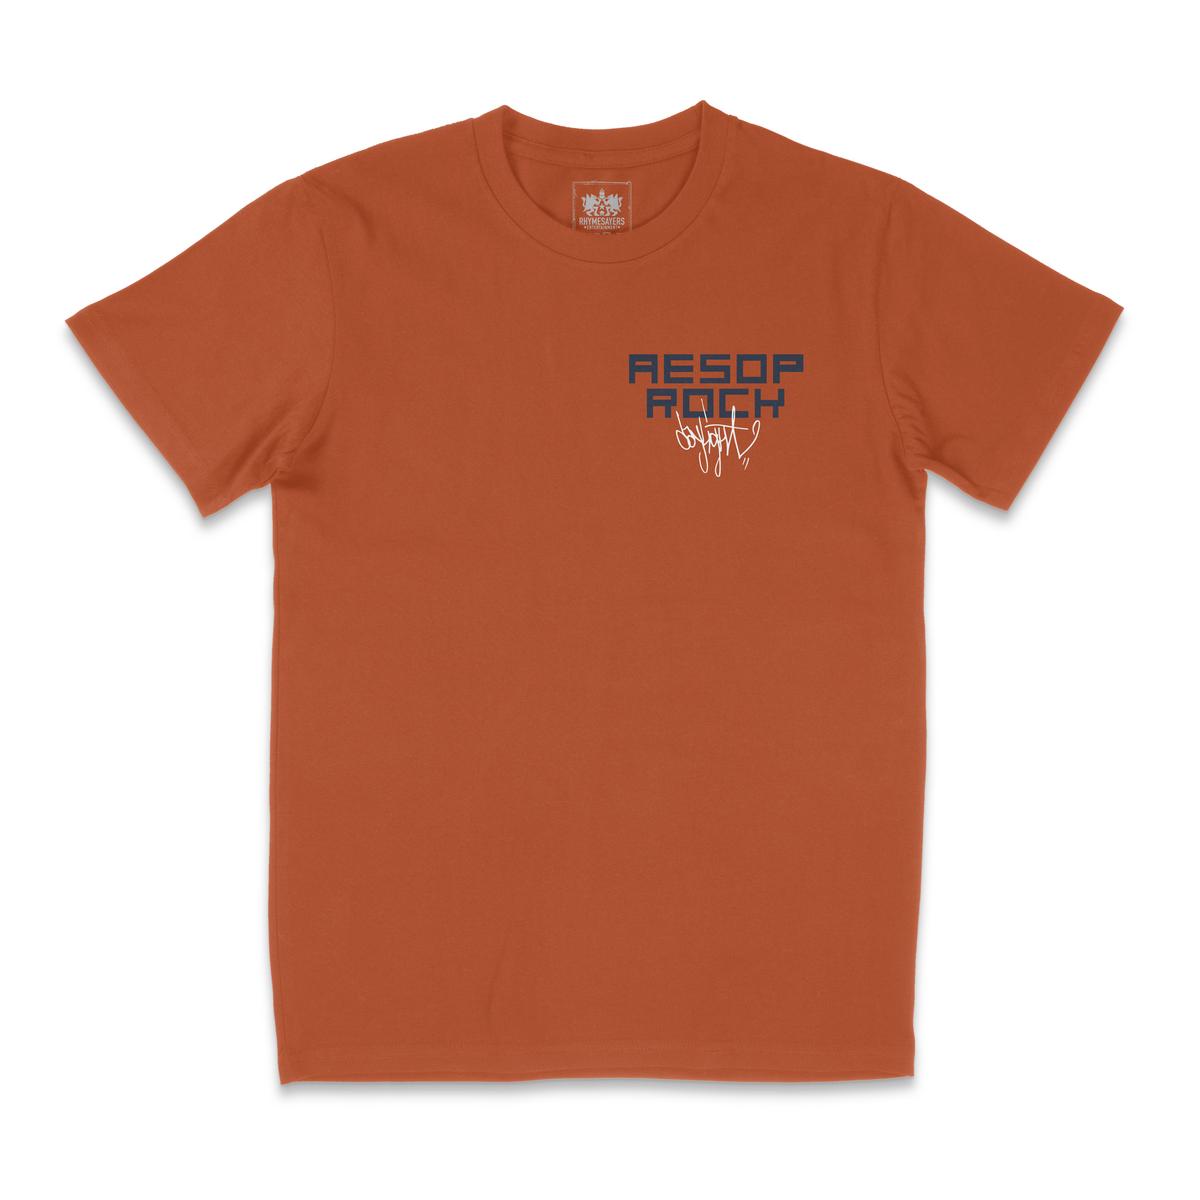 Aesop Rock - Daylight Shirt